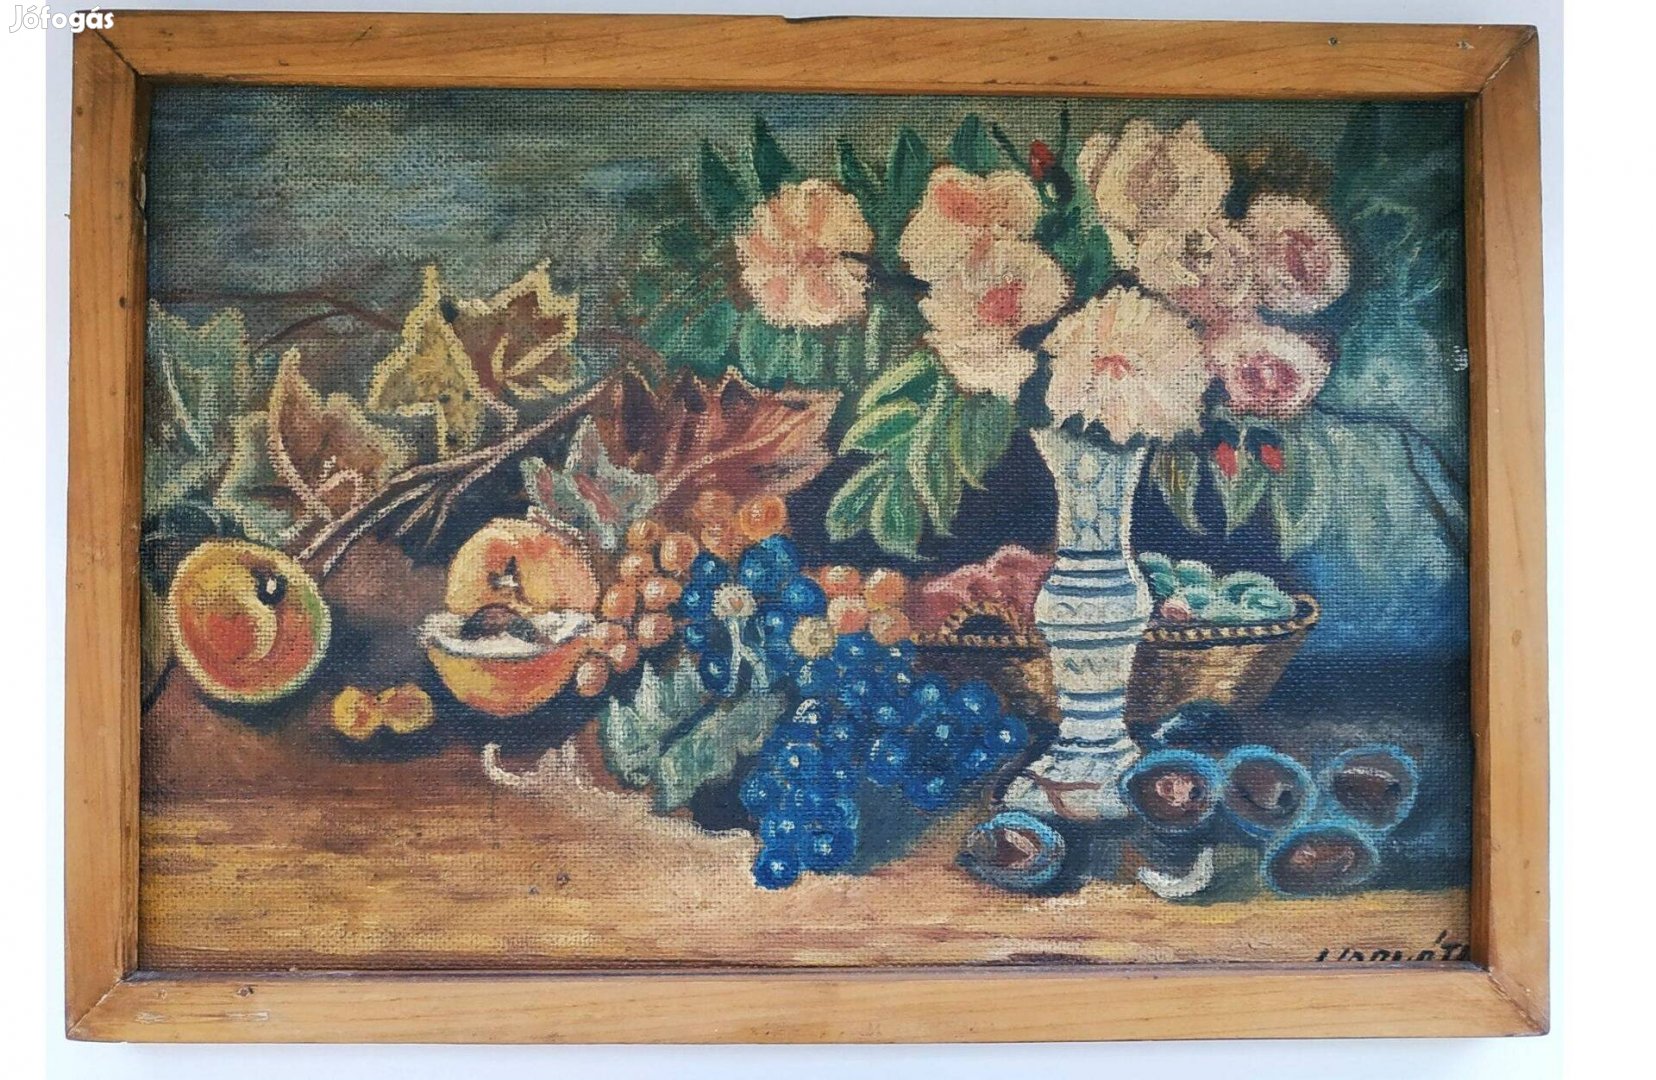 Asztali csendélet gyümölcsökkel, olajfestmény "Horváth" szignóval